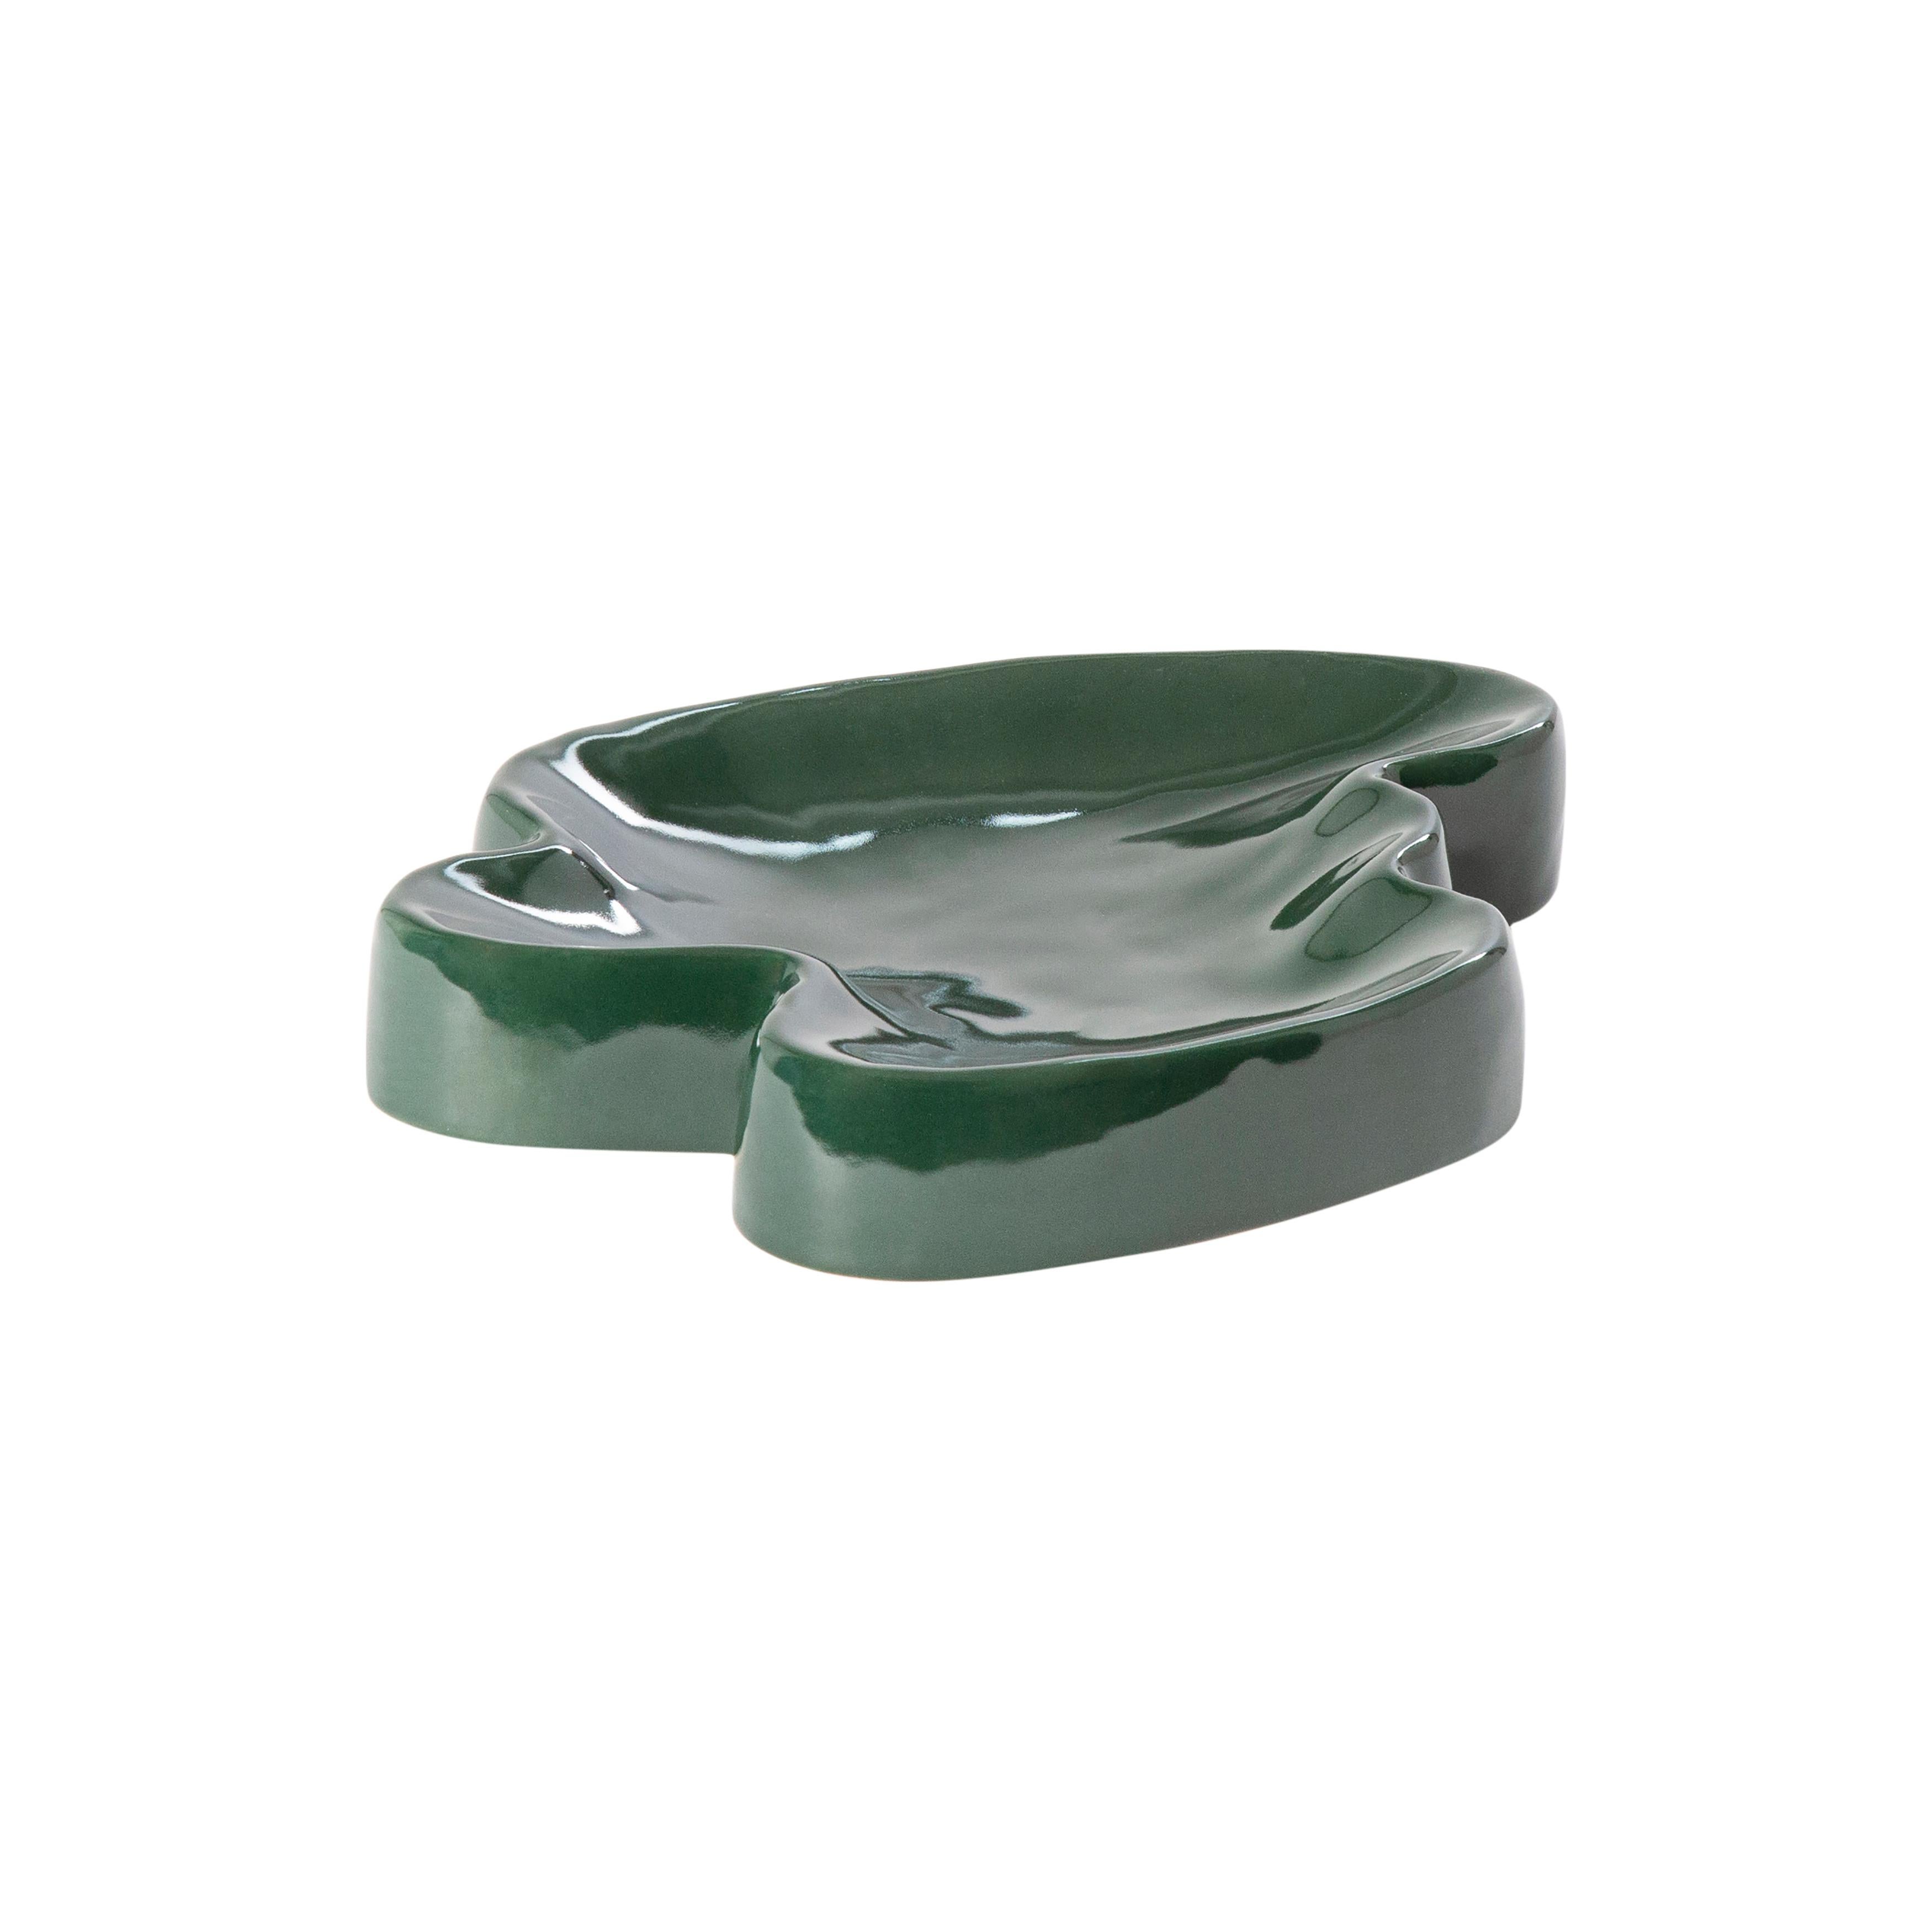 Lake kleines smaragdgrünes Tablett von Pulpo
Abmessungen: T27 x B20 x H4 cm
MATERIALIEN: Keramik

Auch in verschiedenen Farben erhältlich. 

Mit diesen bezaubernden Ergänzungen können Sie eine echte Tischlandschaft kreieren: von den Tönen und